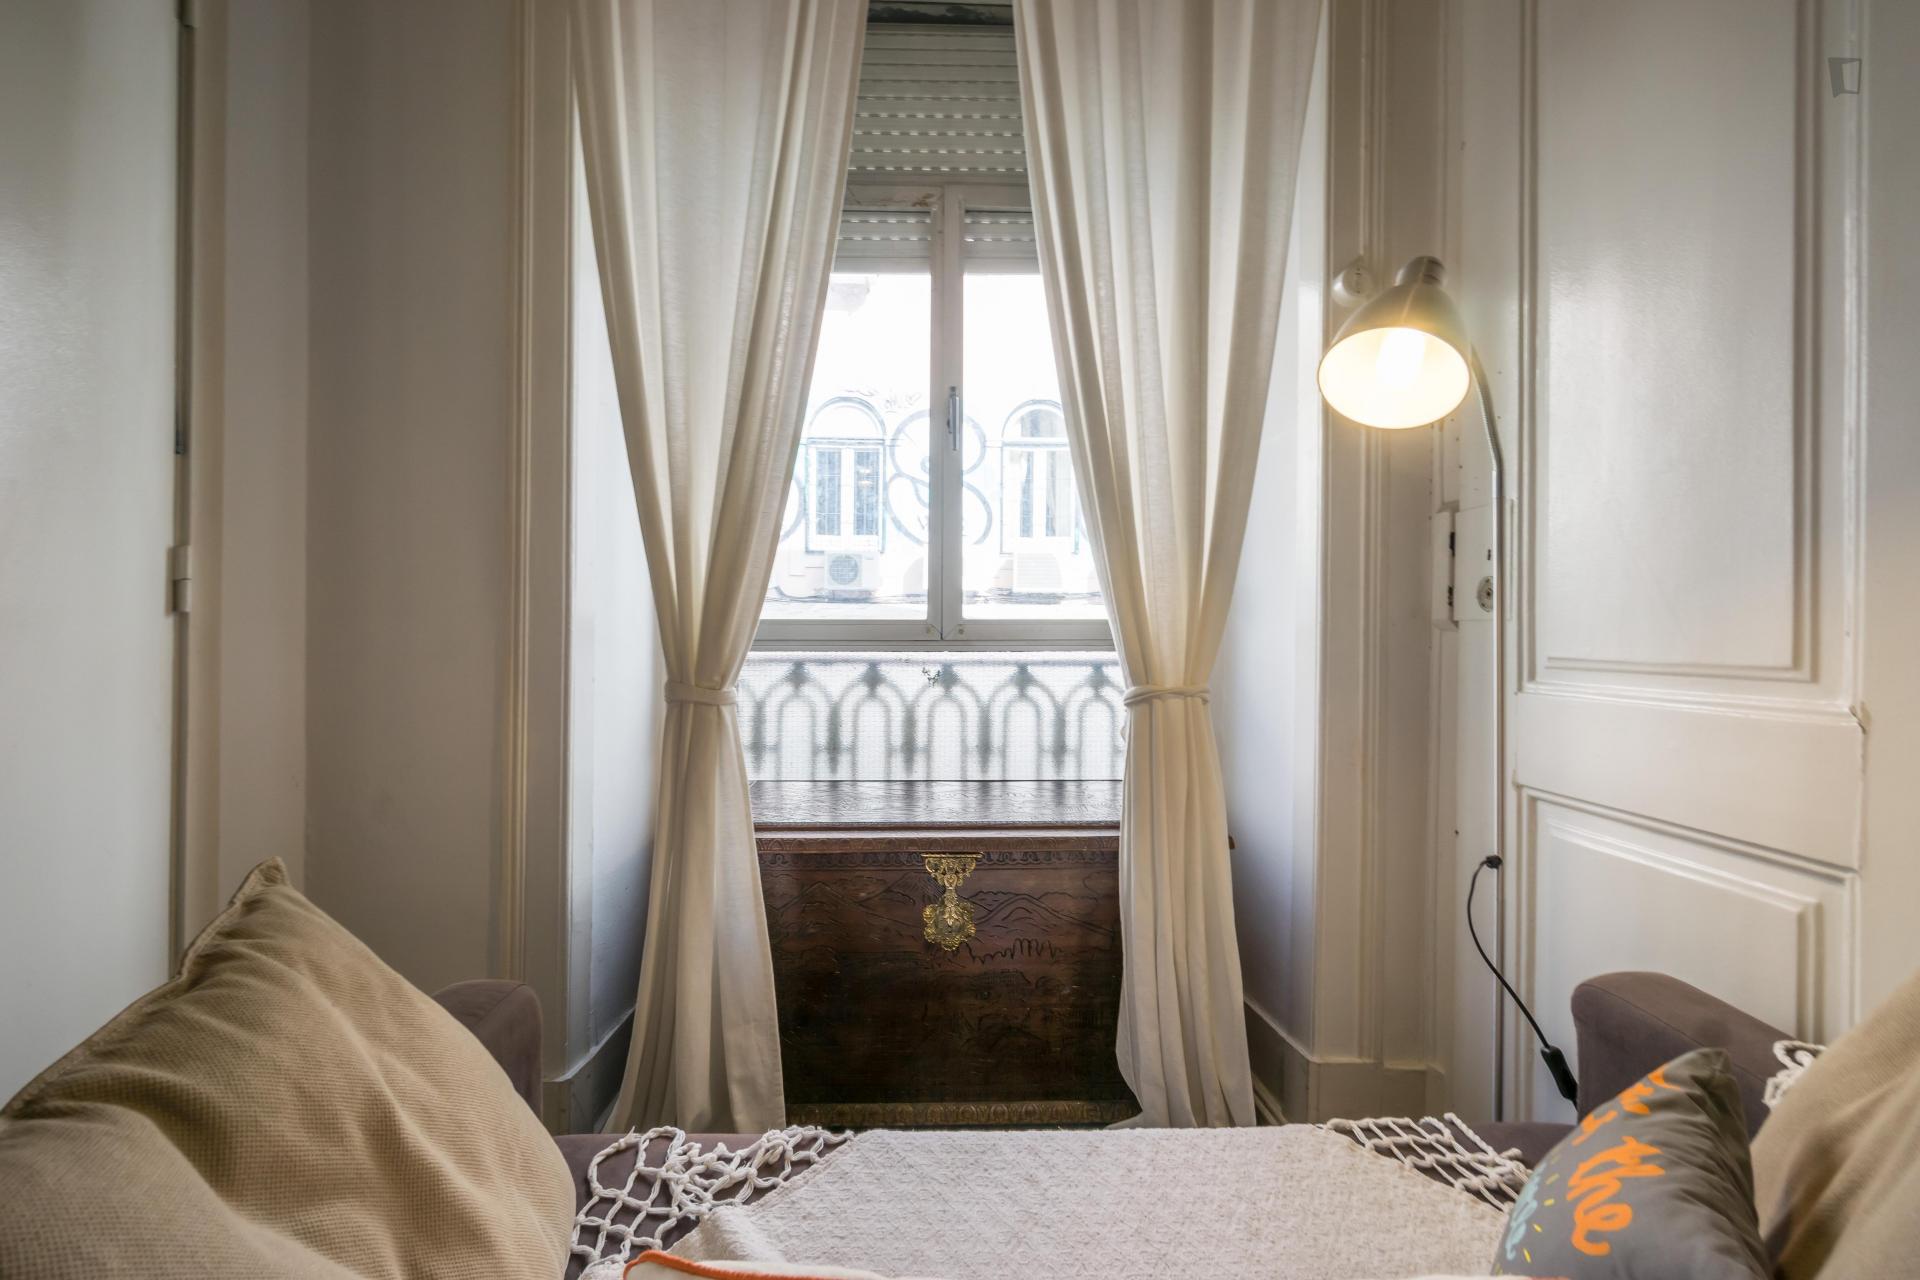 Teixeira- Single bedroom in shared flat in Lisbon